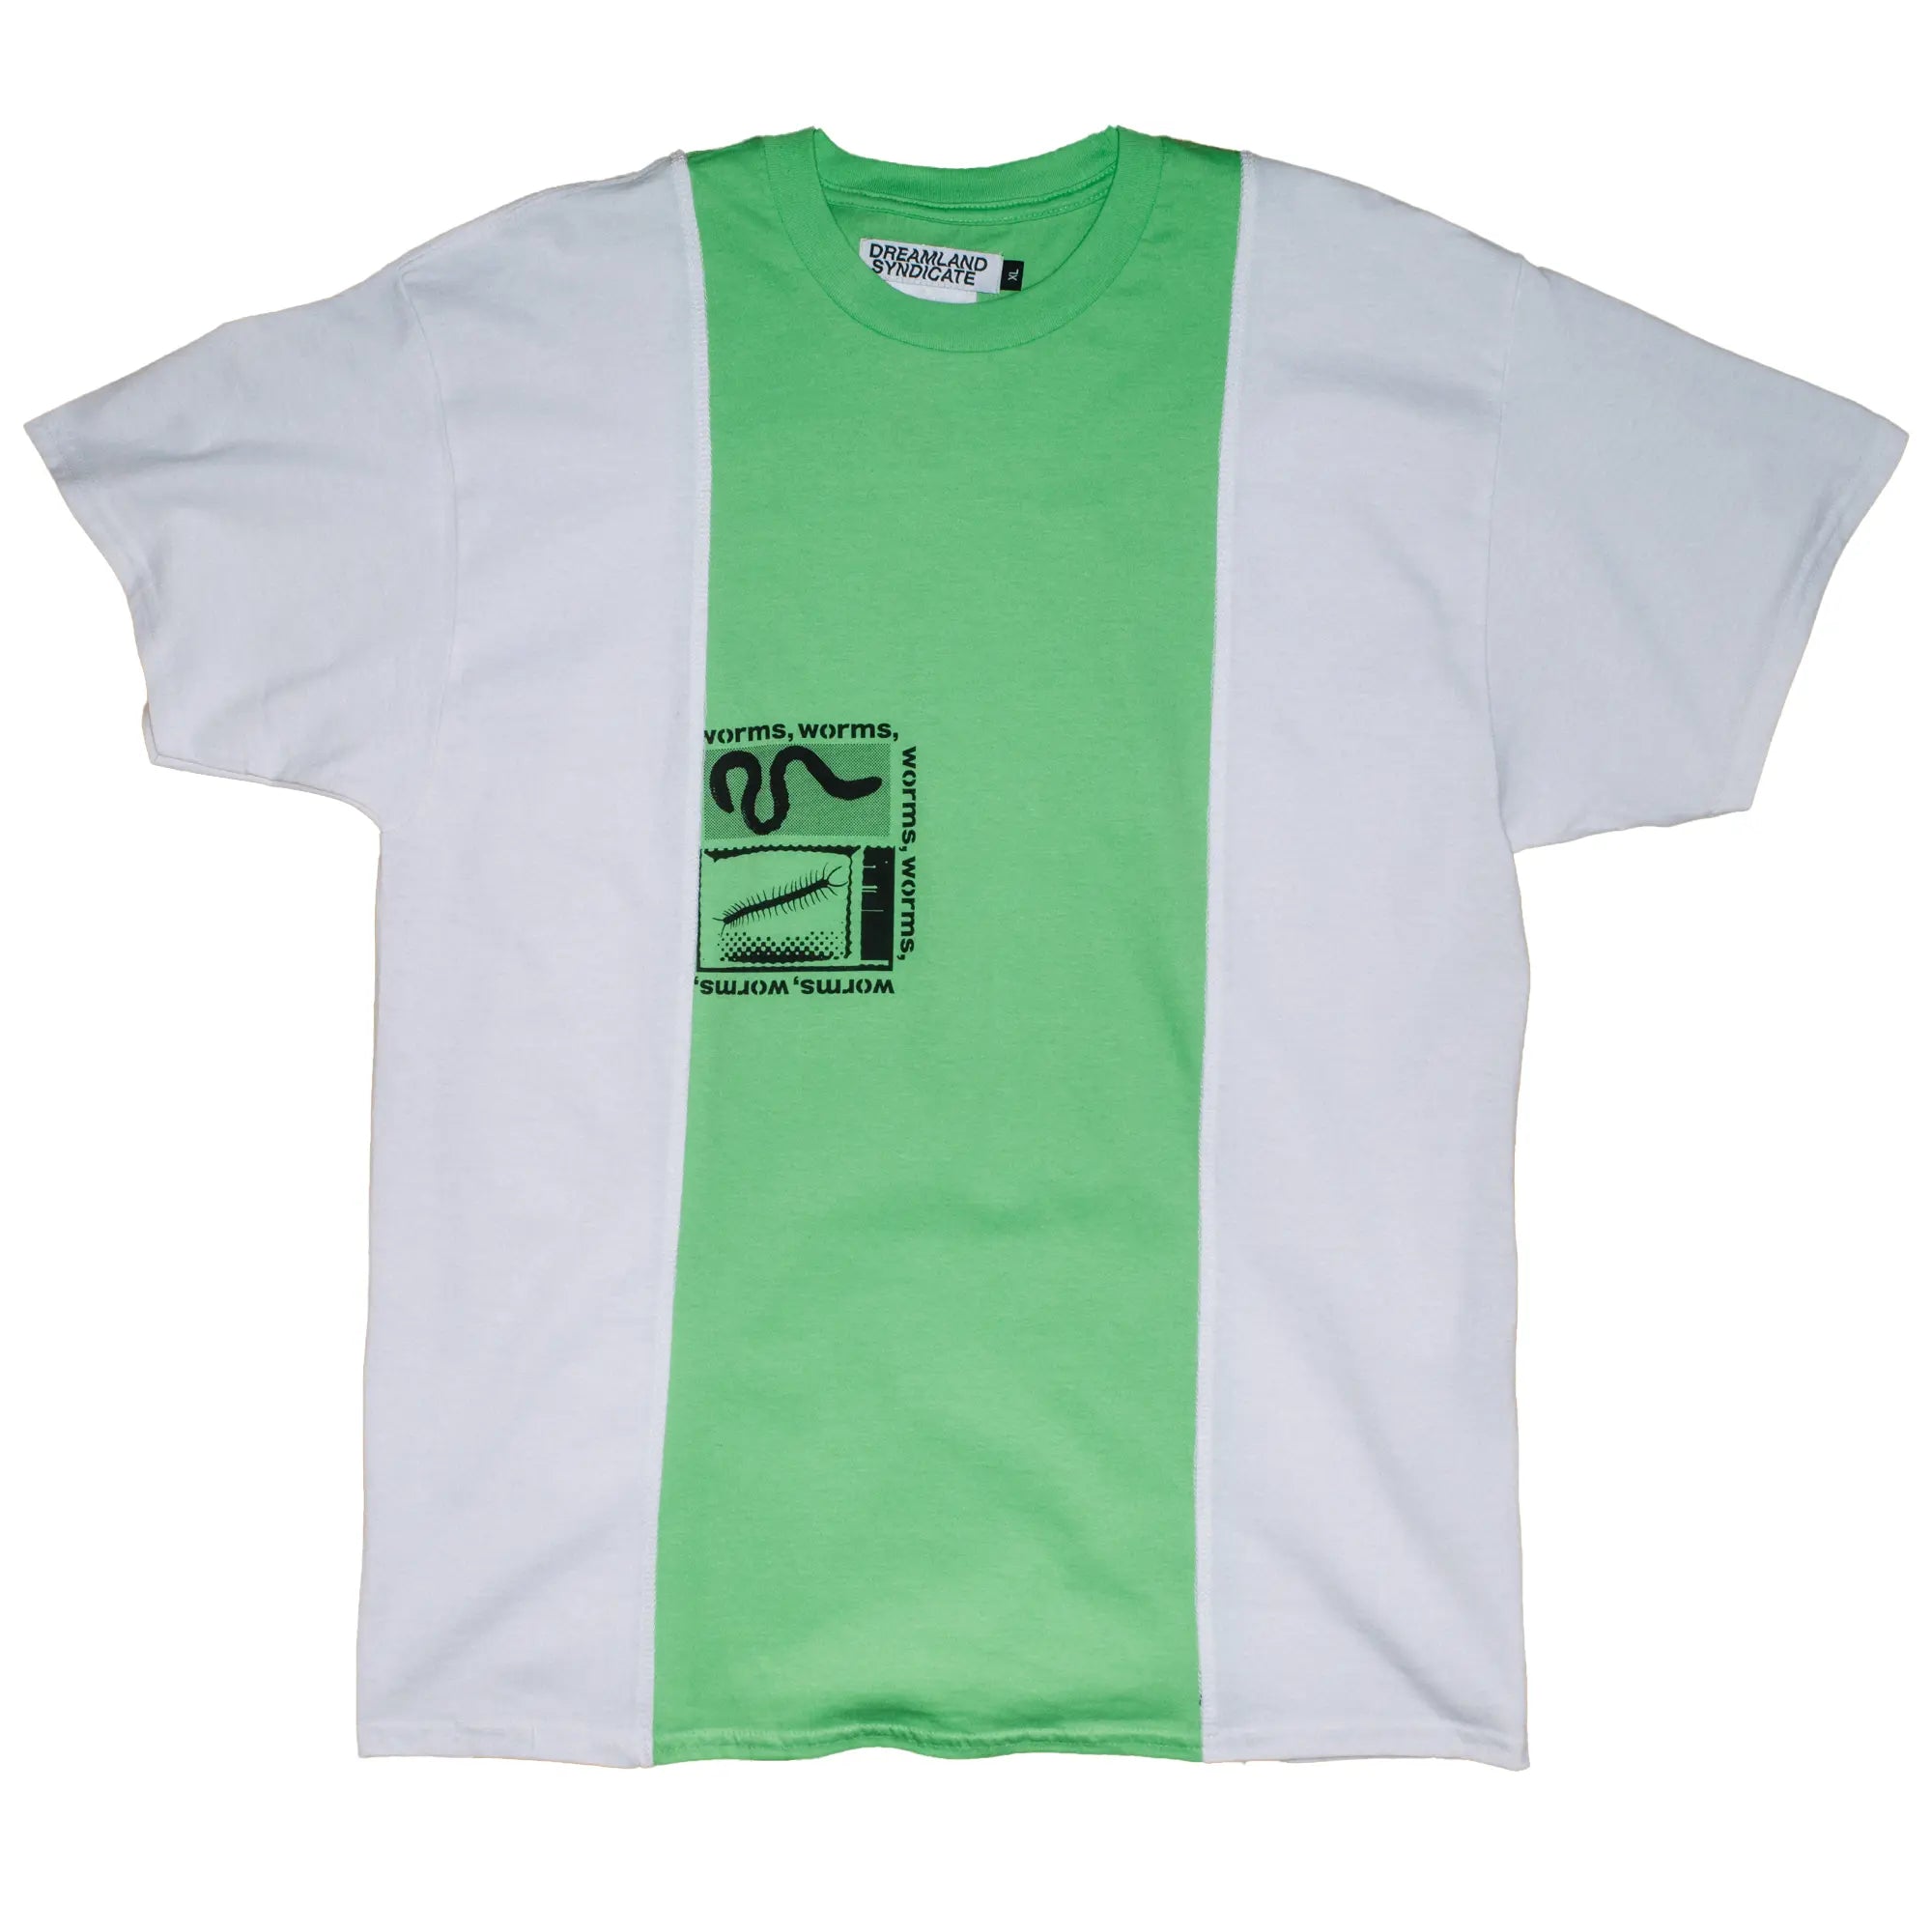 CUT-UP T-shirt no. 2311 - XL